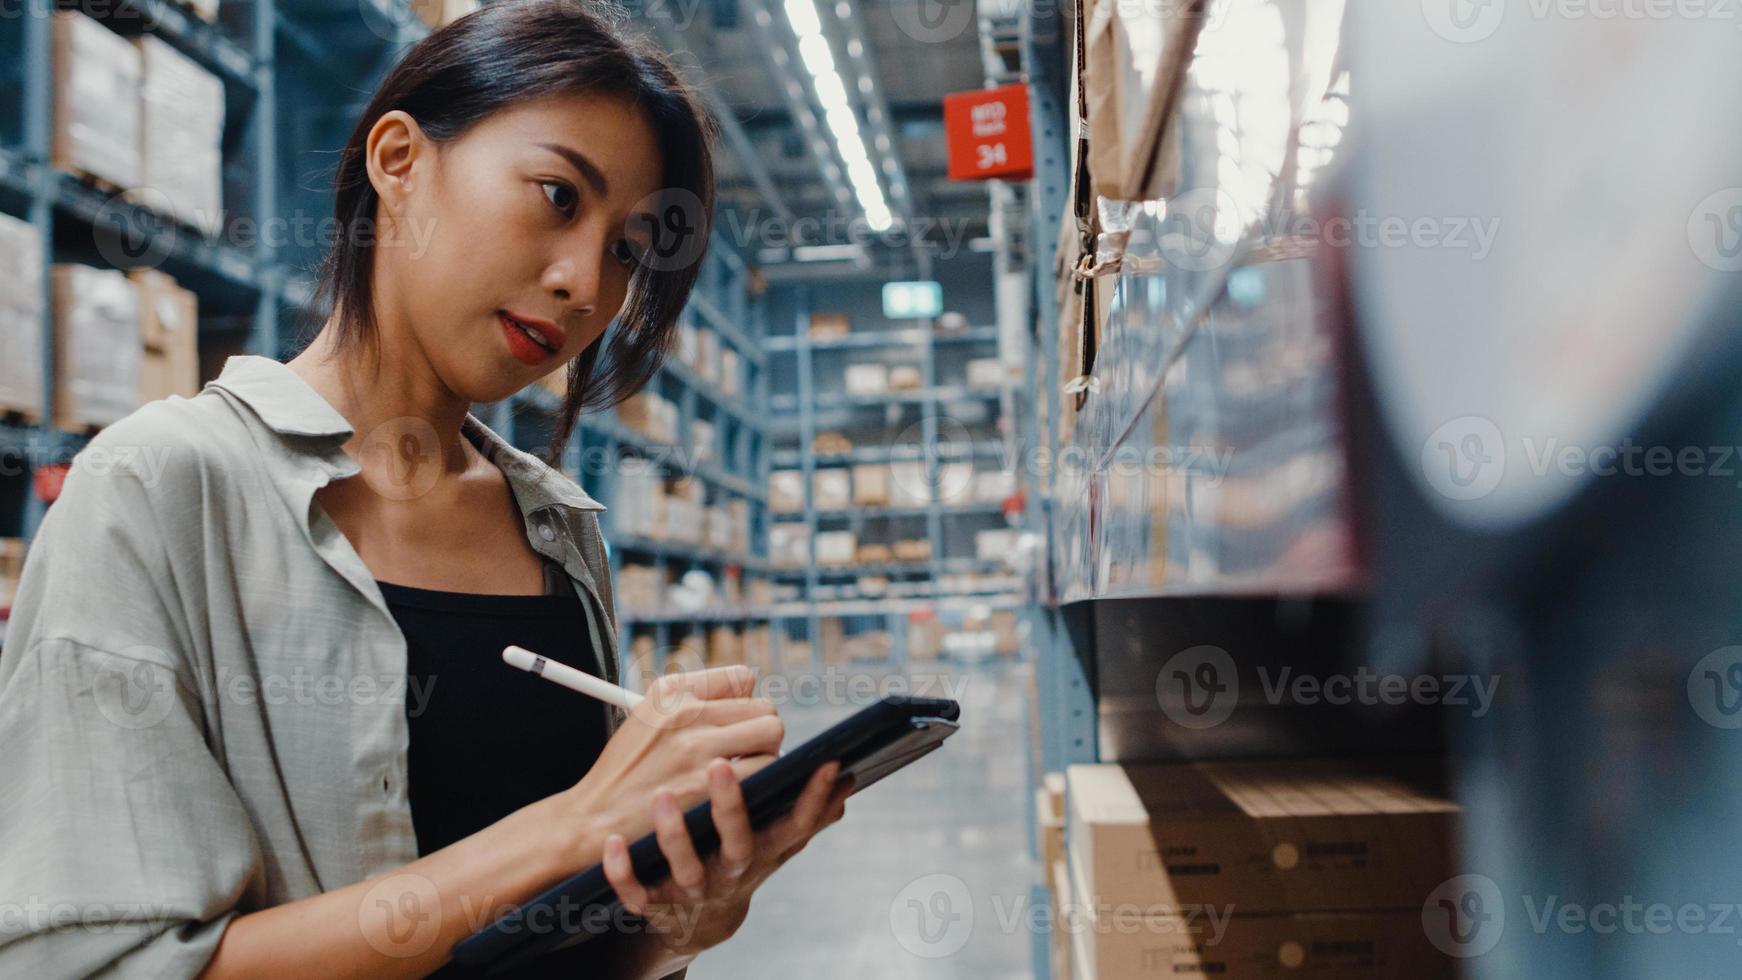 Attraktive junge Geschäftsfrau in Asien, die nach Waren sucht, indem sie digitale Tablets verwendet, um die Lagerbestände im Einzelhandels-Einkaufszentrum zu überprüfen. Distribution, Logistik, versandfertige Pakete. foto